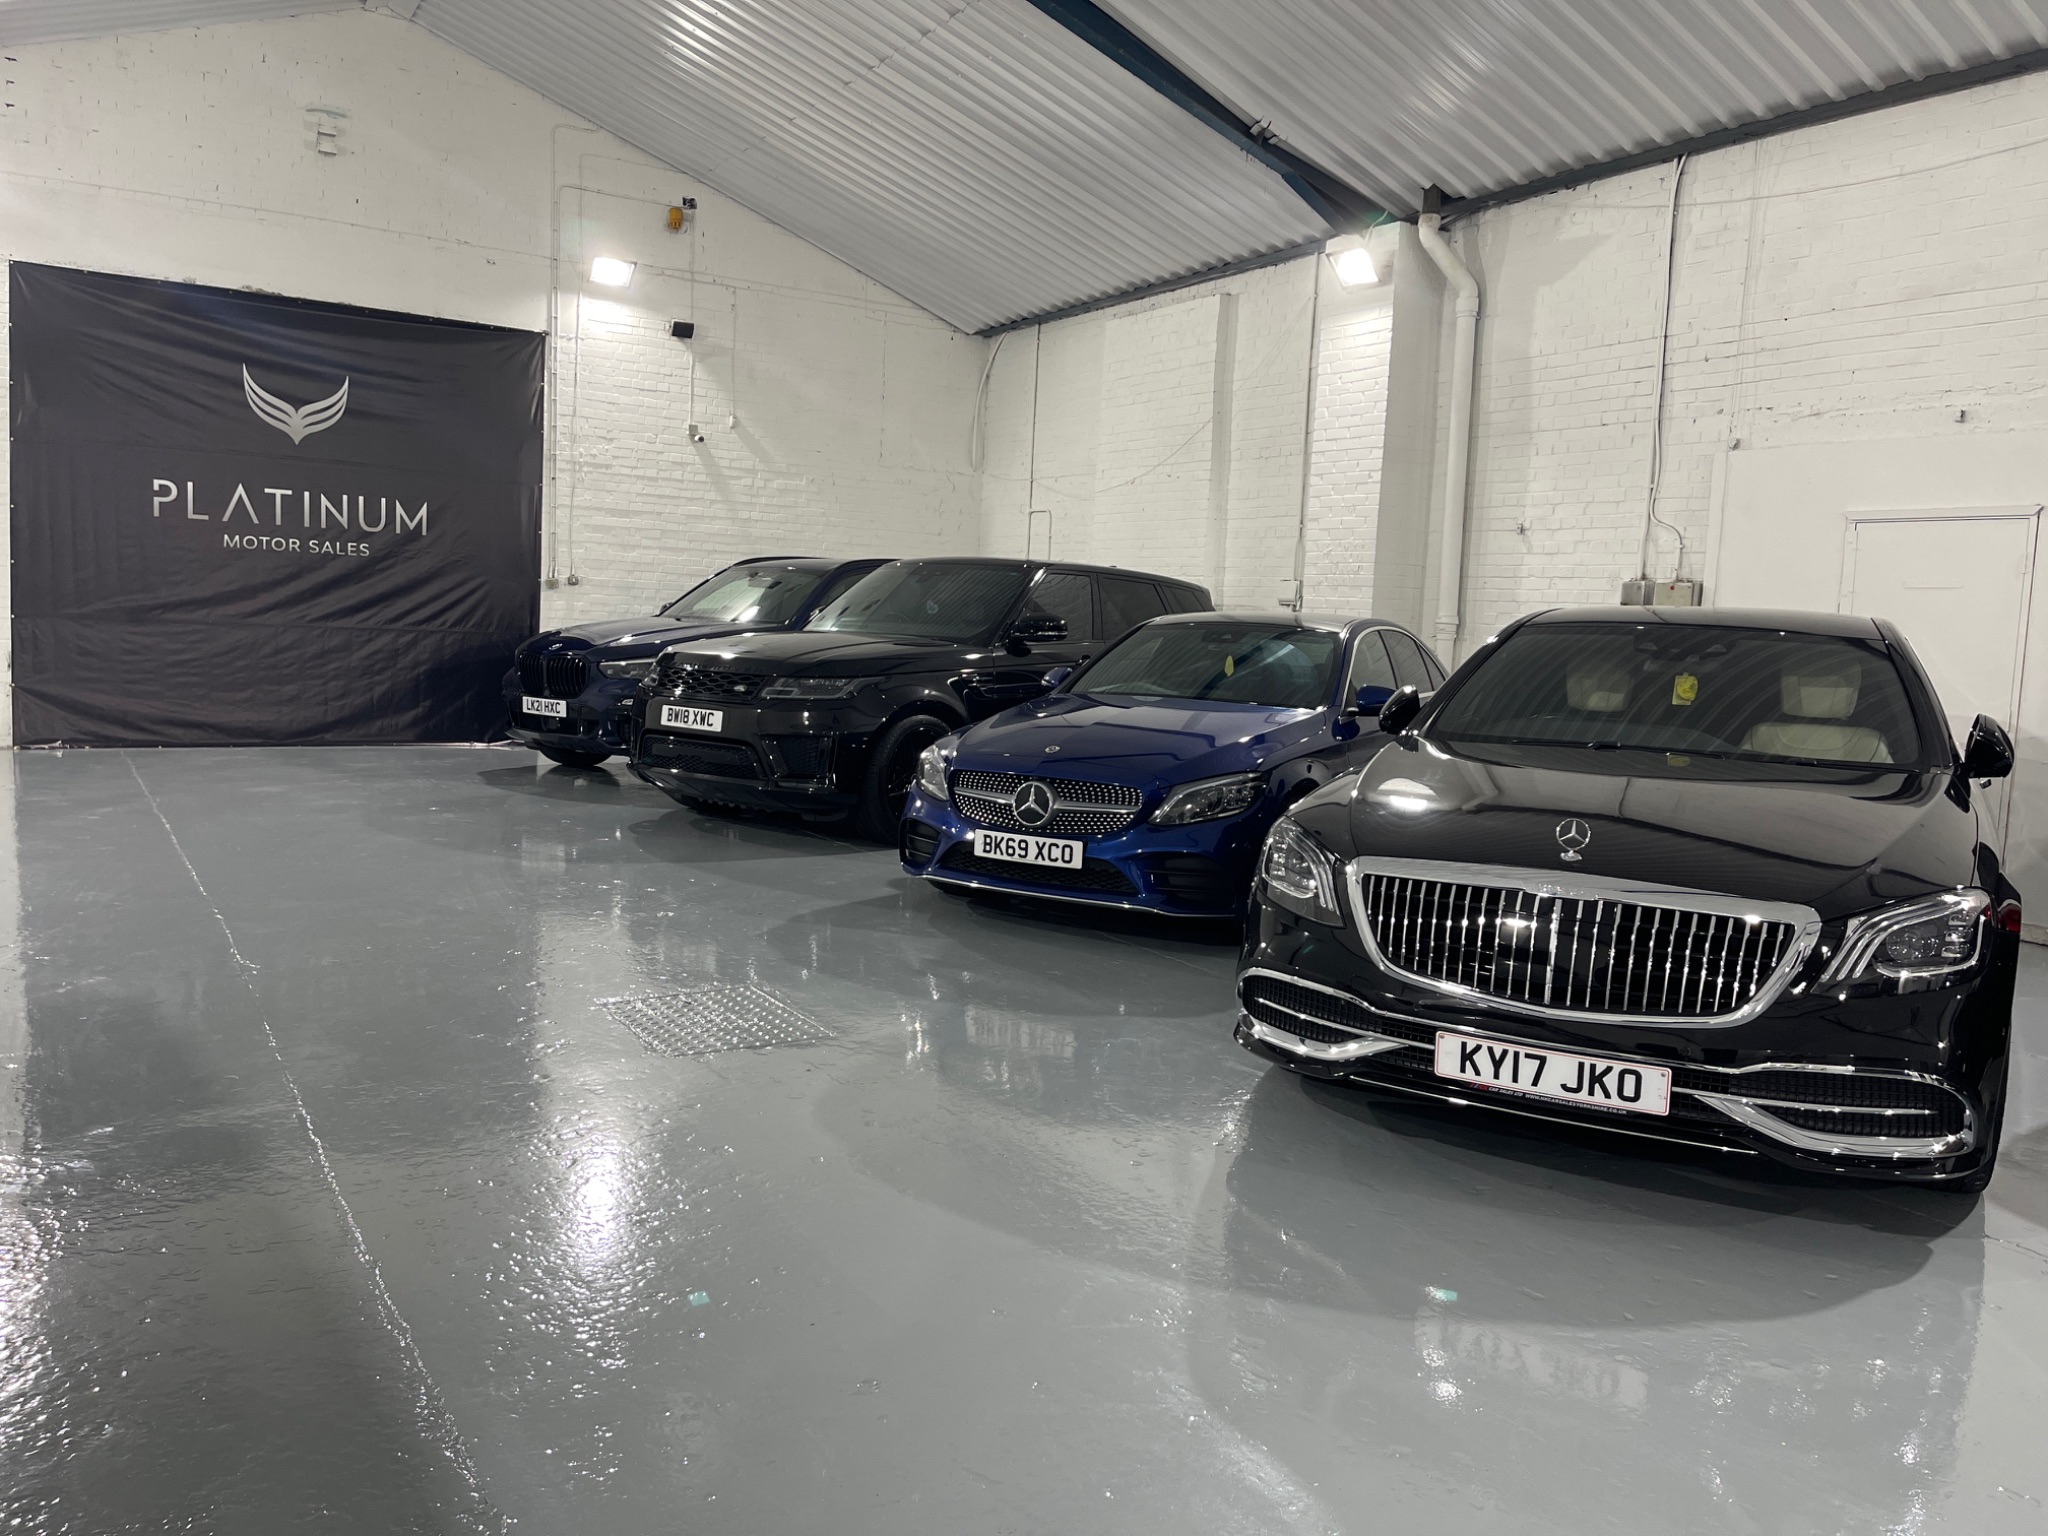 Platinum Motor Sales | Car dealership in West Bromwich | AutoTrader